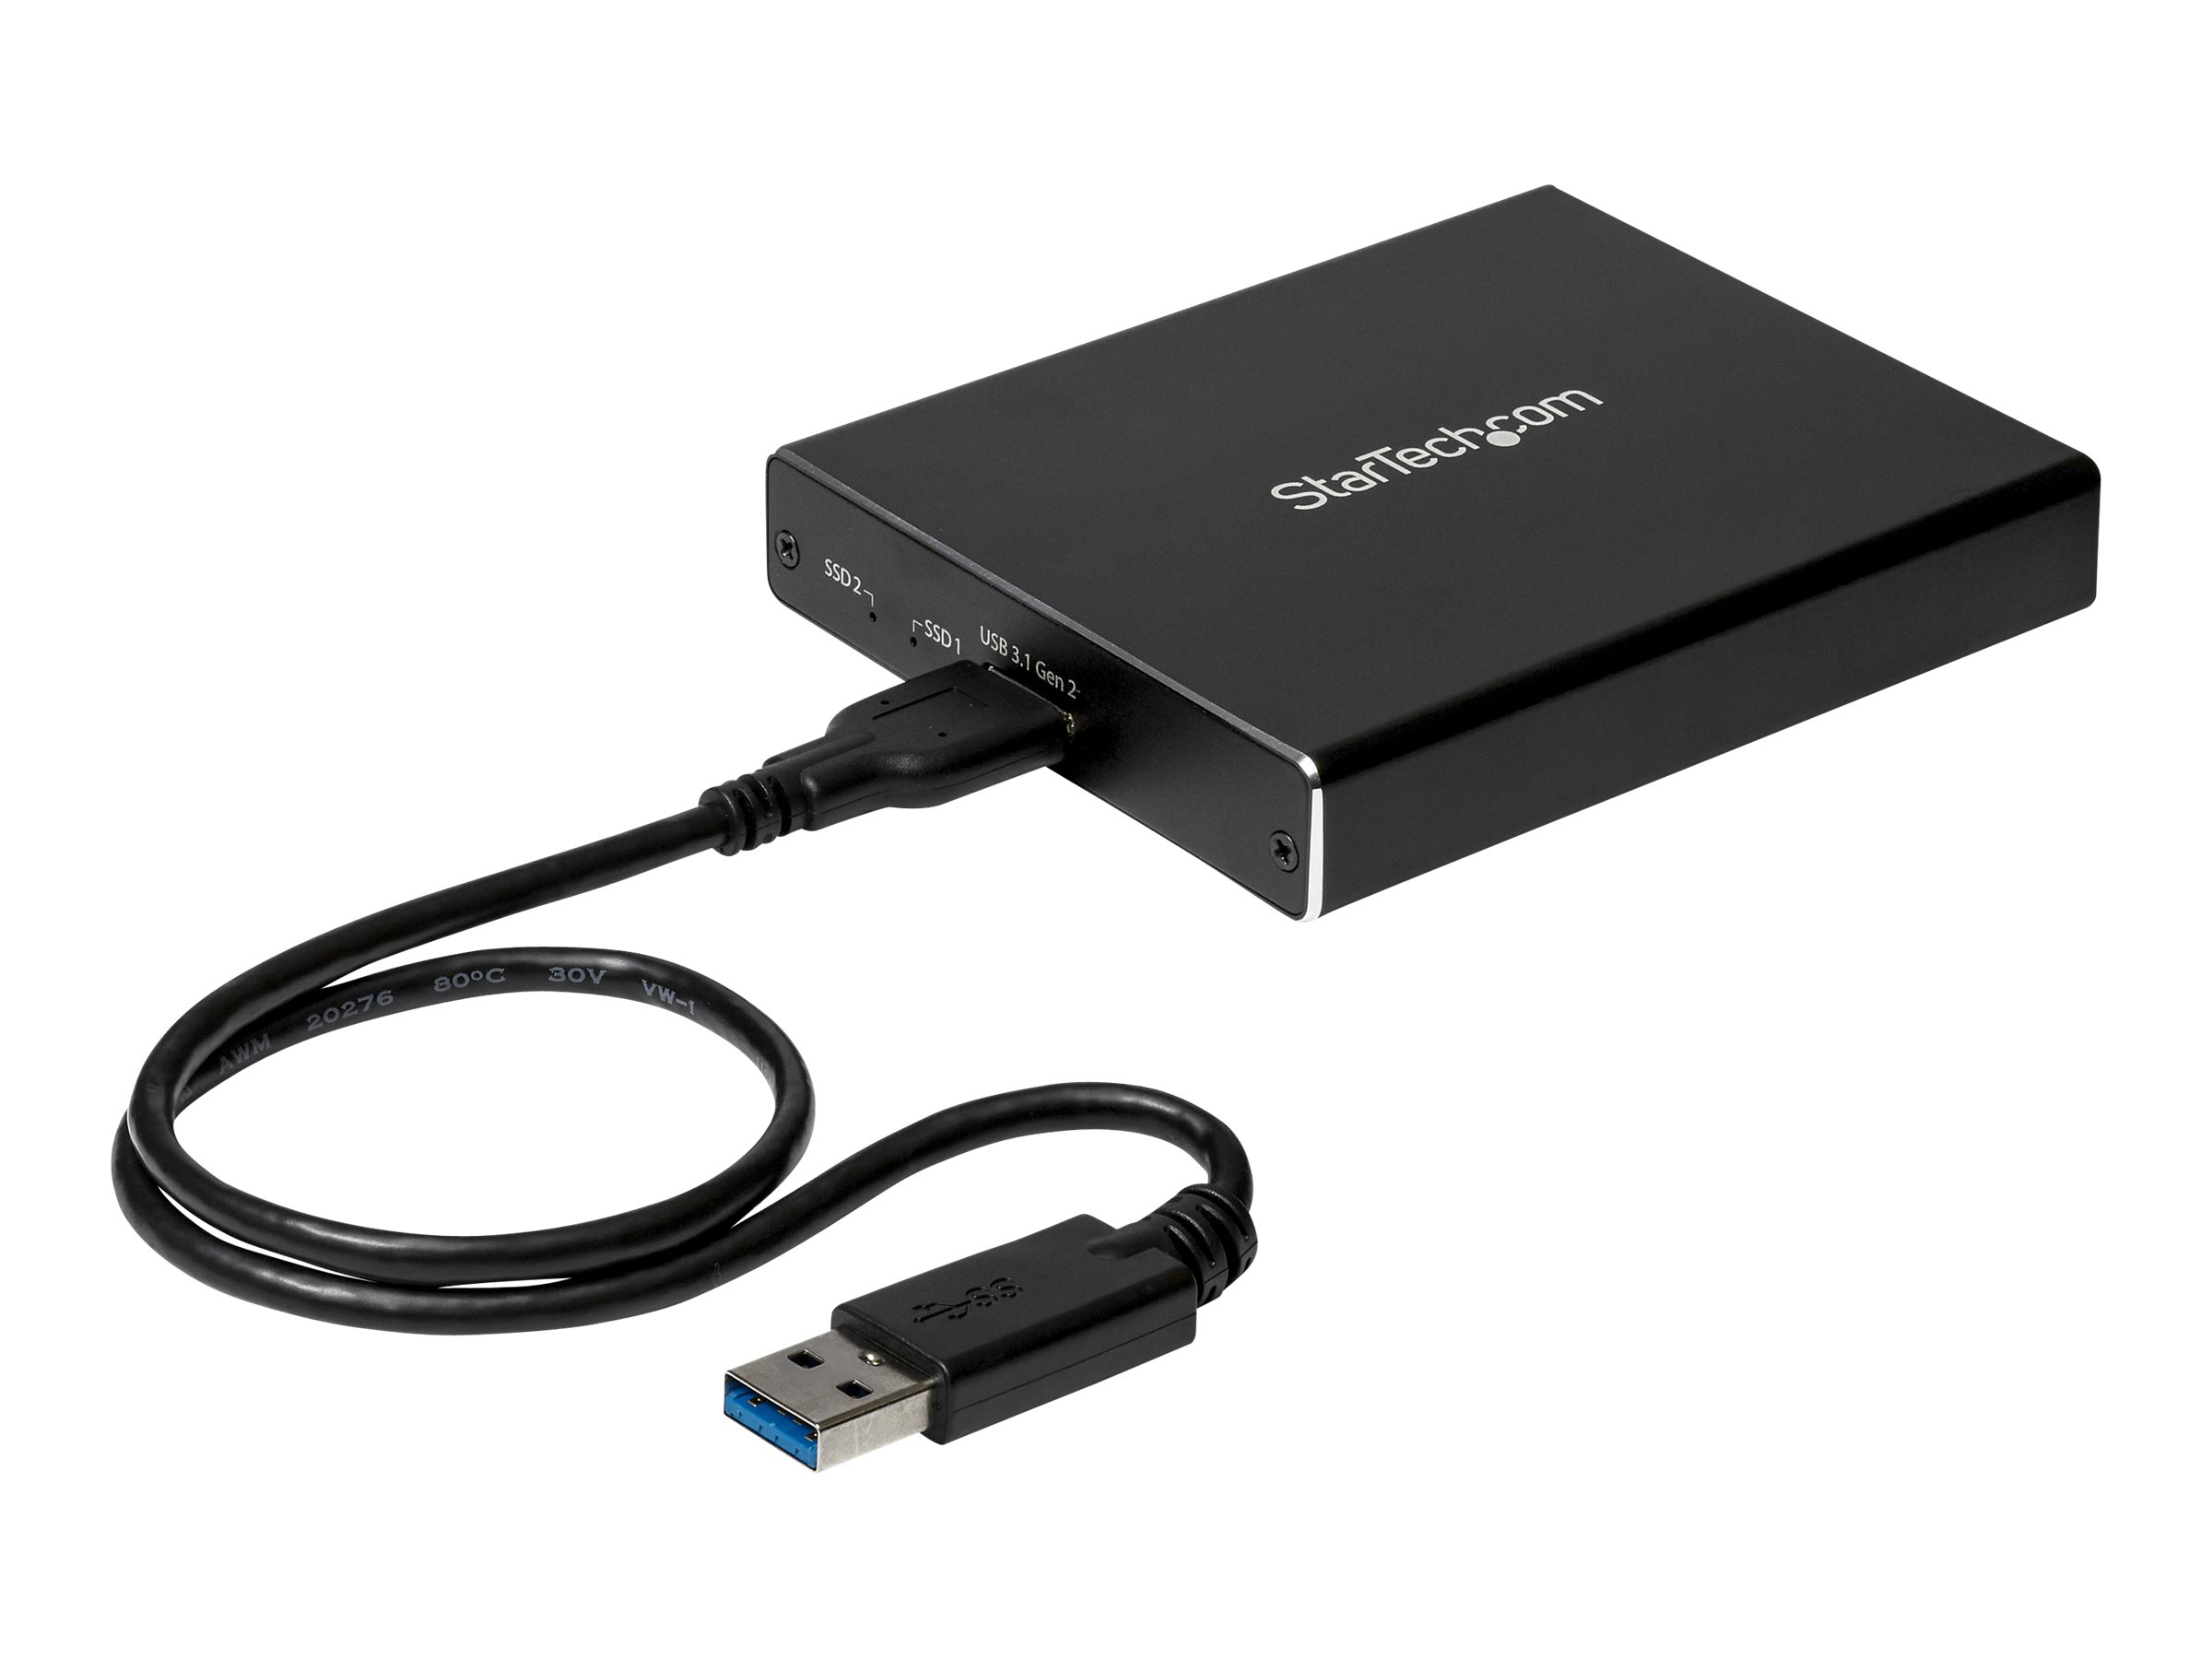 StarTech.com SSD Festplattengehäuse für zwei M.2 Festplatten - USB 3.1 Type C - USB C Kabel - USB 3.1 Case zu 2x M2 Adapter - Fl